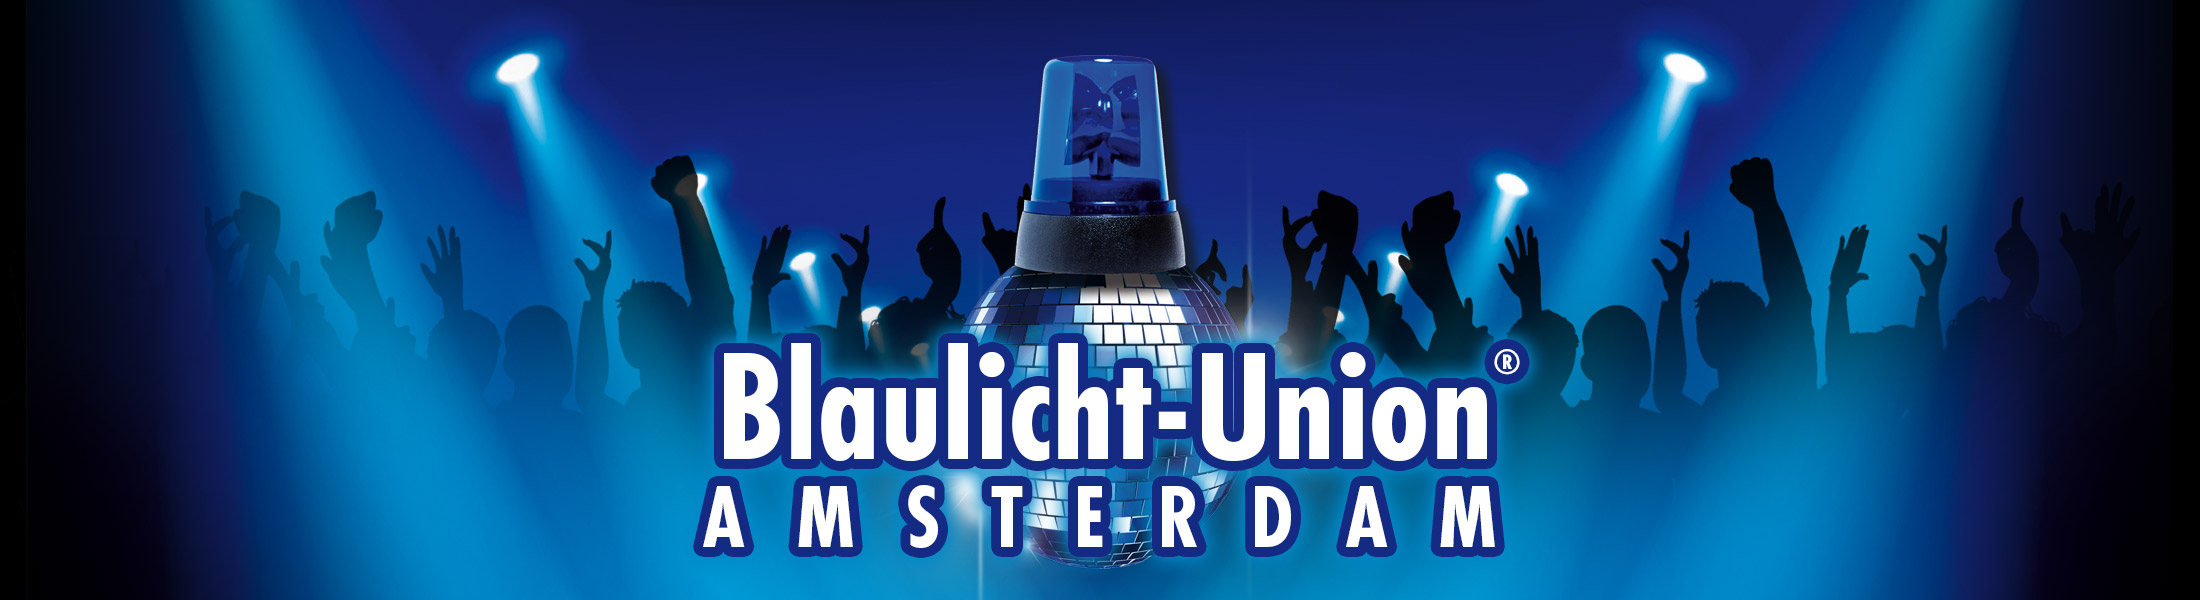 Blaulicht Union Party® Amsterdam